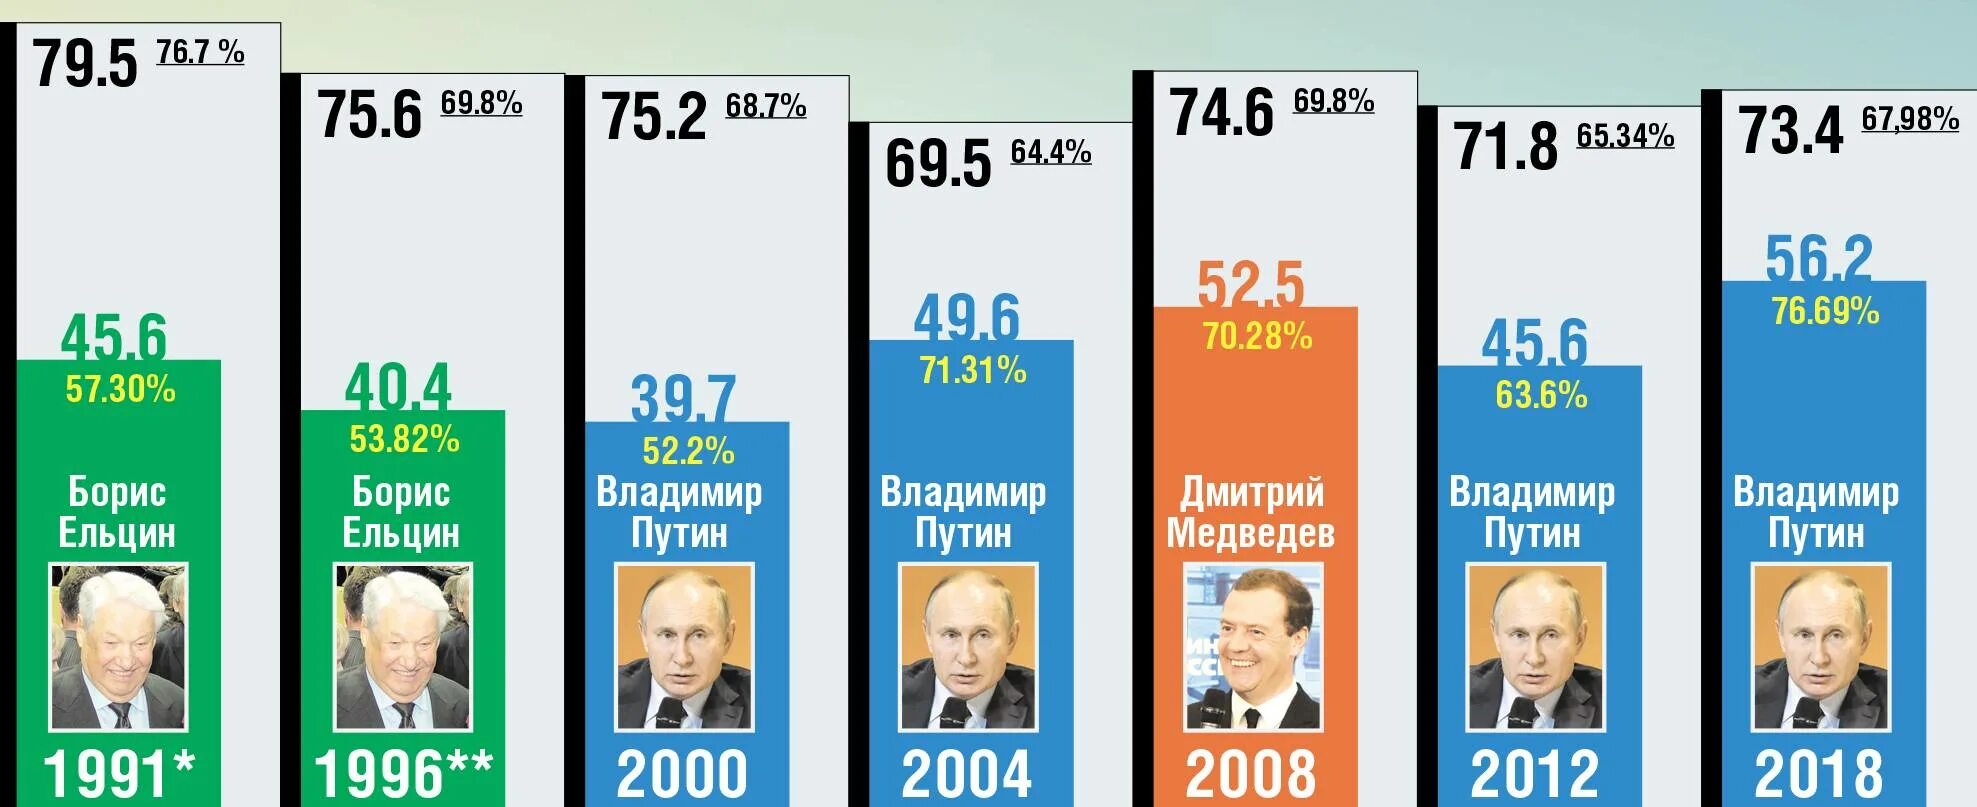 Какого числа были выборы в 2018 году. Итоги голосования президента России 2004. Итоги выборов Путина 2004 года. Выборы 2018 года в России. Выборы 2018 года в России президента.